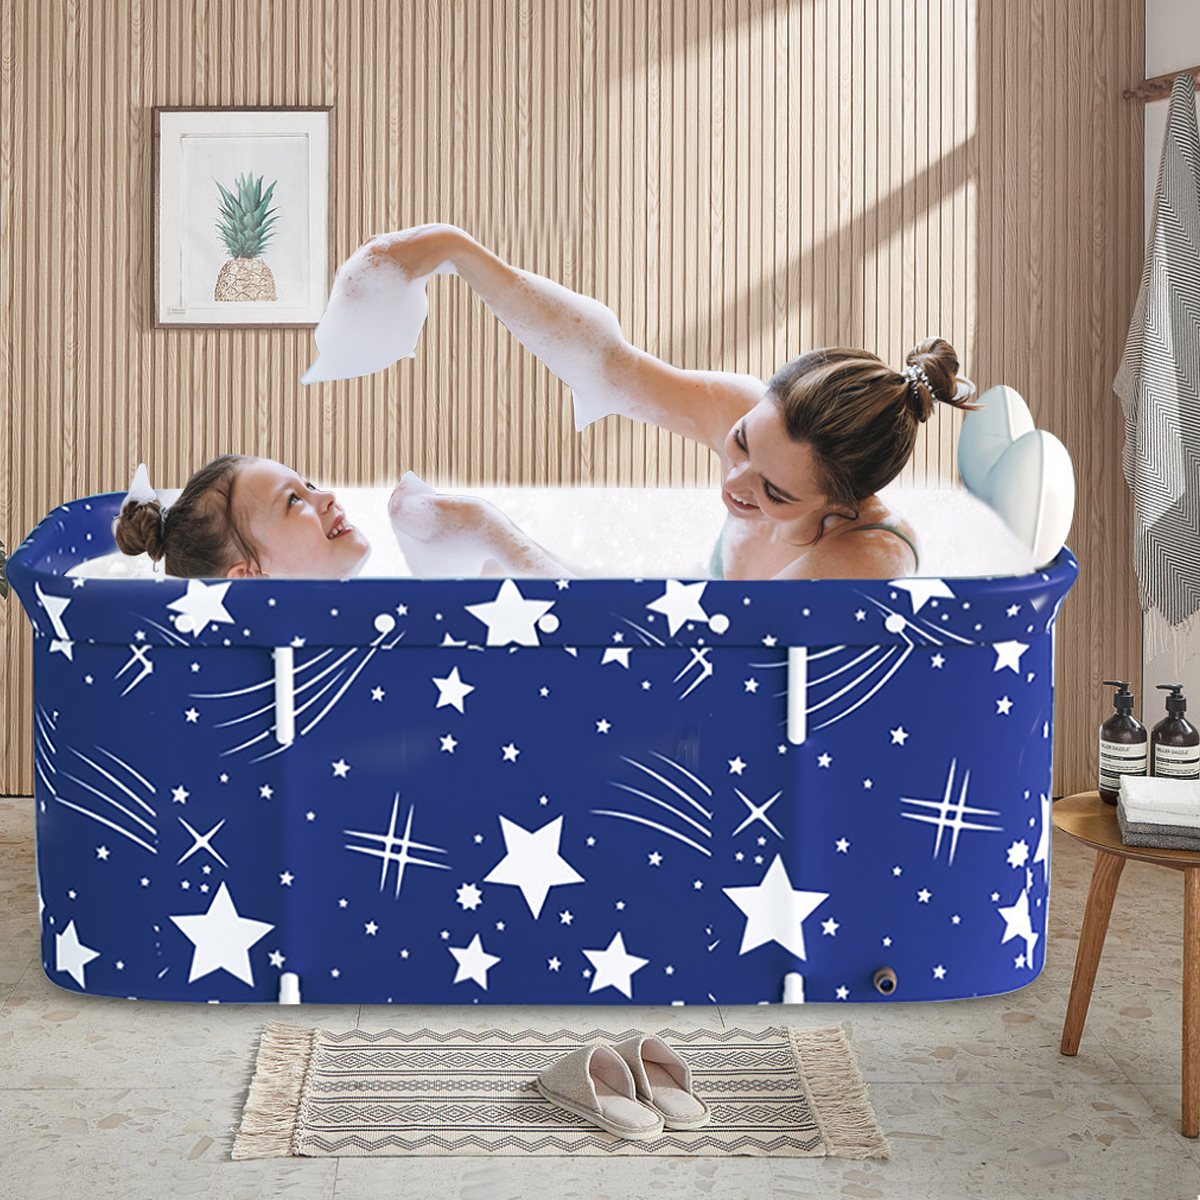 SLLINGLUO 47in Portable Folding Bathtub in Eco-Friendly Pvc, Family Bathroom Spa Tub, Ideal for Hot Bath Ice Bath, 47.2"x21.65"x19.68"(Starry Blue) - image 4 of 11